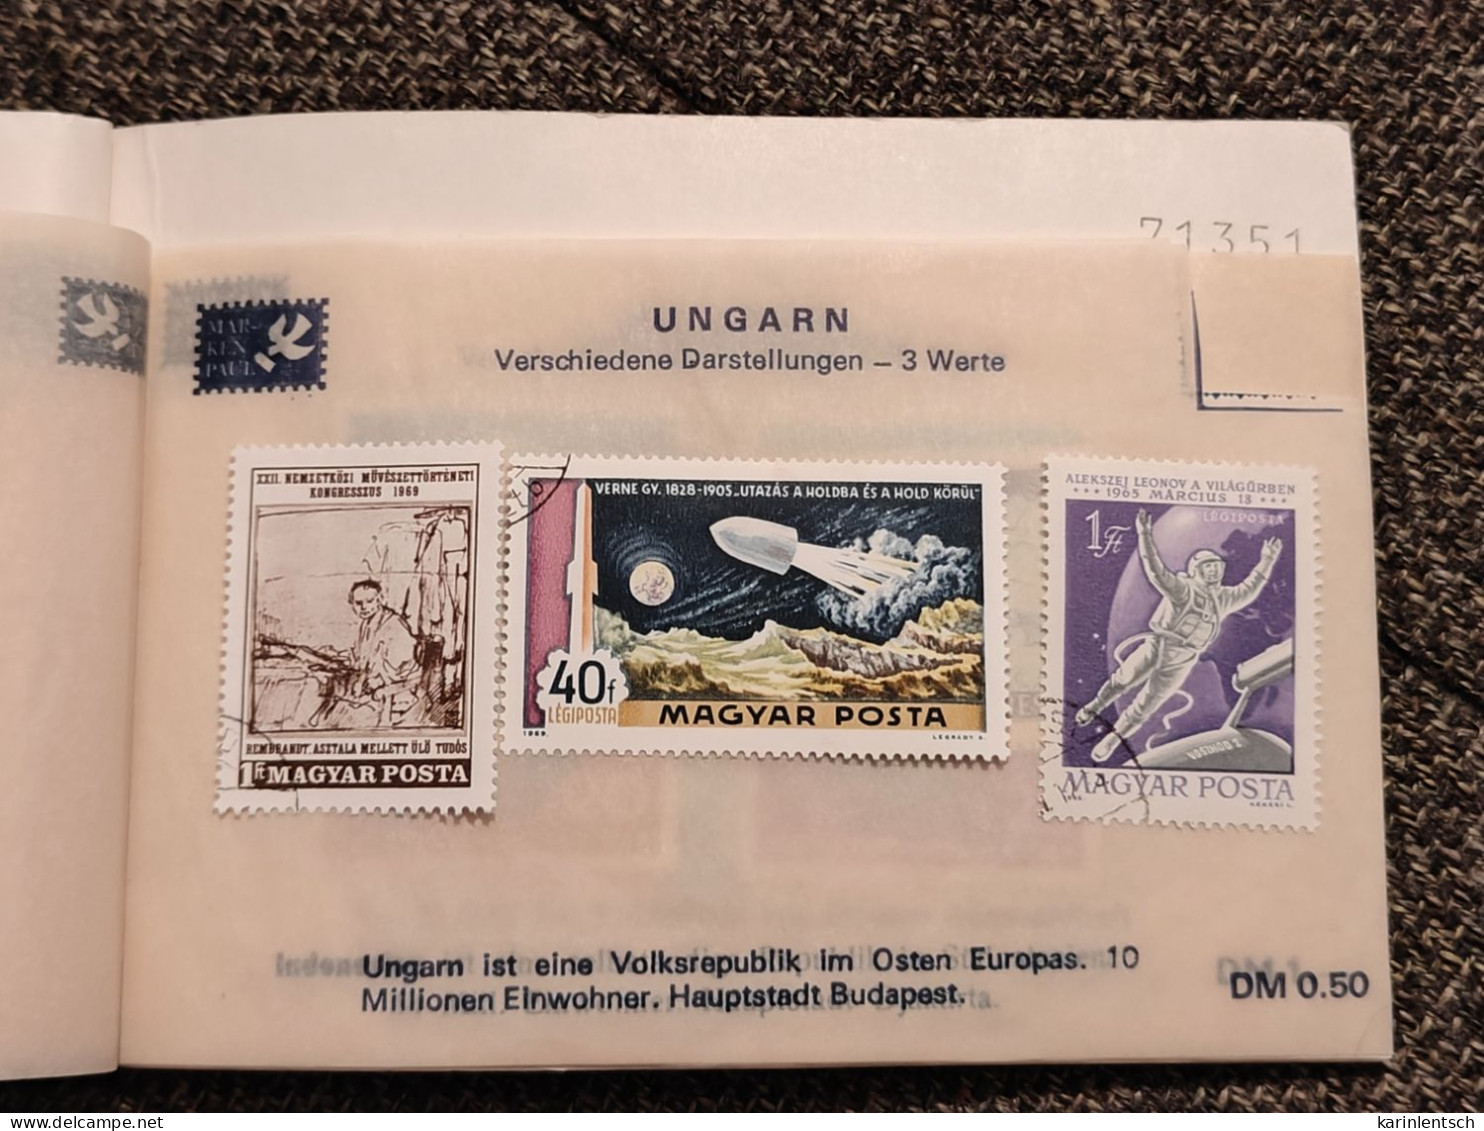 Auswahlhef Mit Briefmarken Aus Aller Welt - Sammlungen (im Alben)